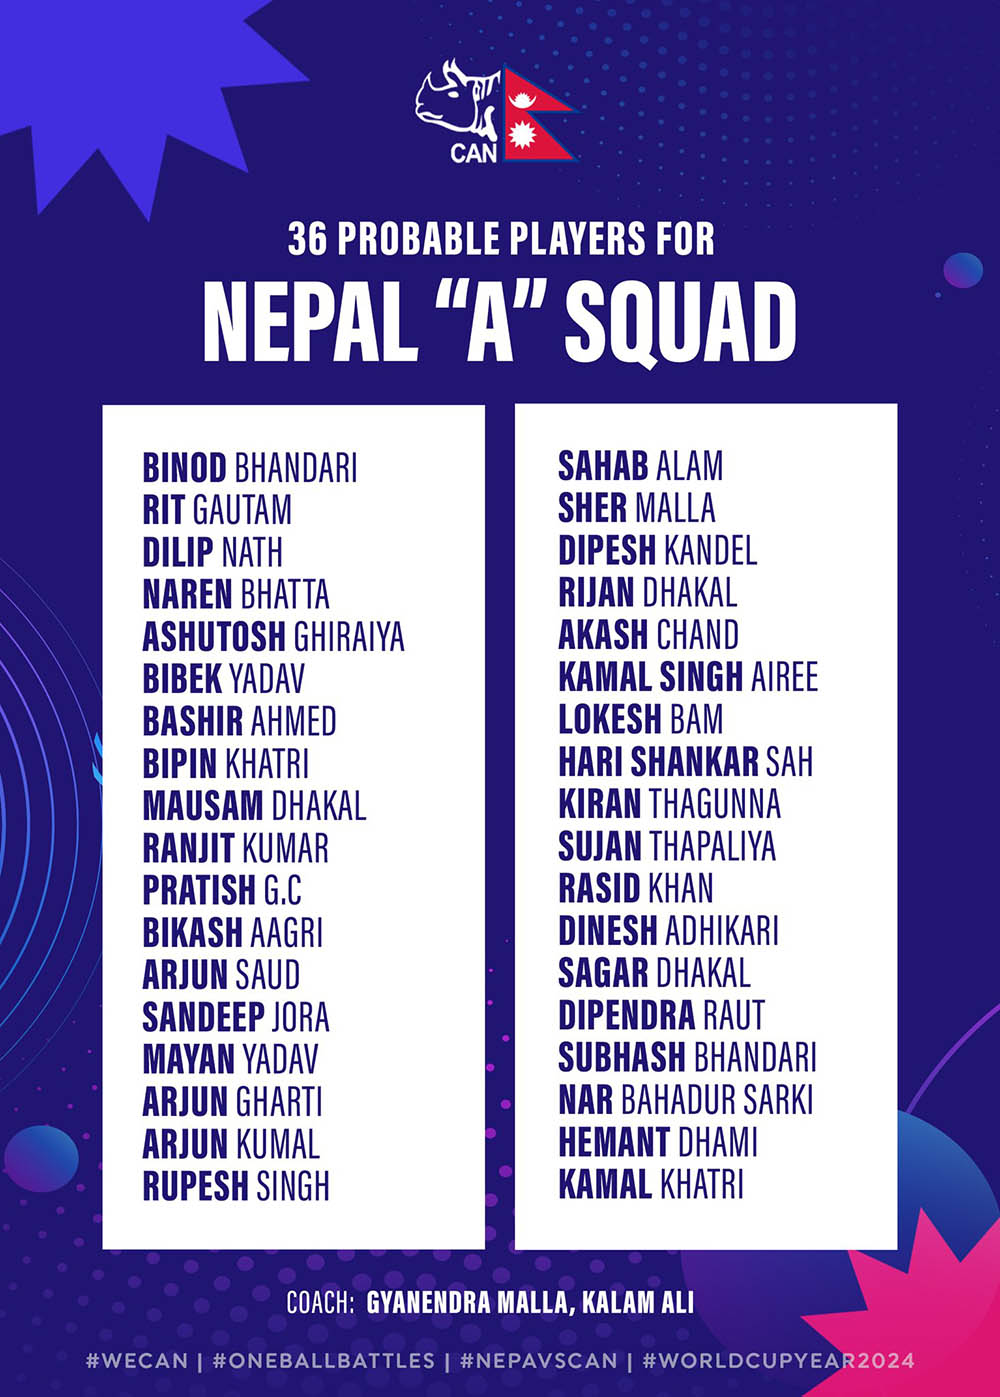 नेपाल ‘ए’ क्रिकेट टिमको प्रारम्भिक ३६ जनाको सूची सार्वजनिक, ज्ञानेन्द्र र कलाम बने प्रशिक्षक